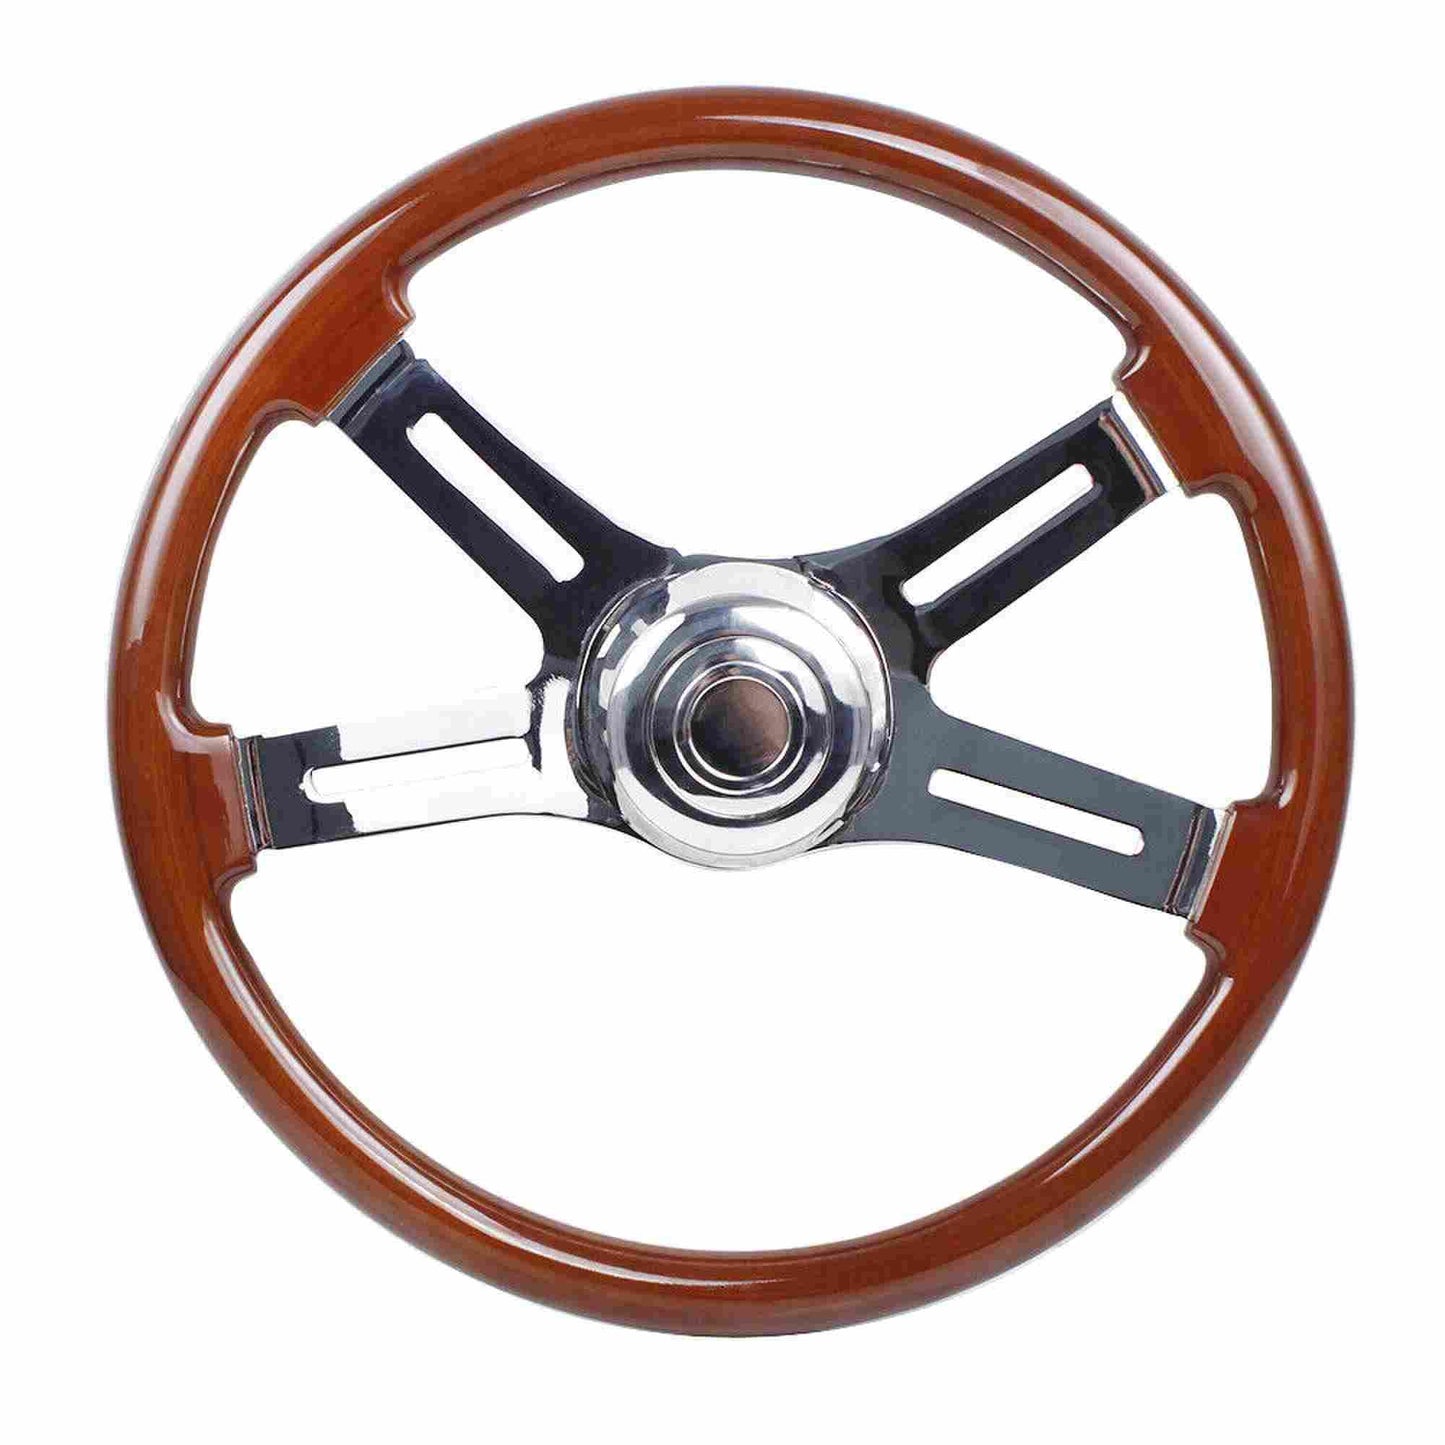 RASTP 18 Inch 4 Spoke Wood Truck Steering Wheel for Freightliner, Kenworth, Peterbilt, Volvo - RASTP